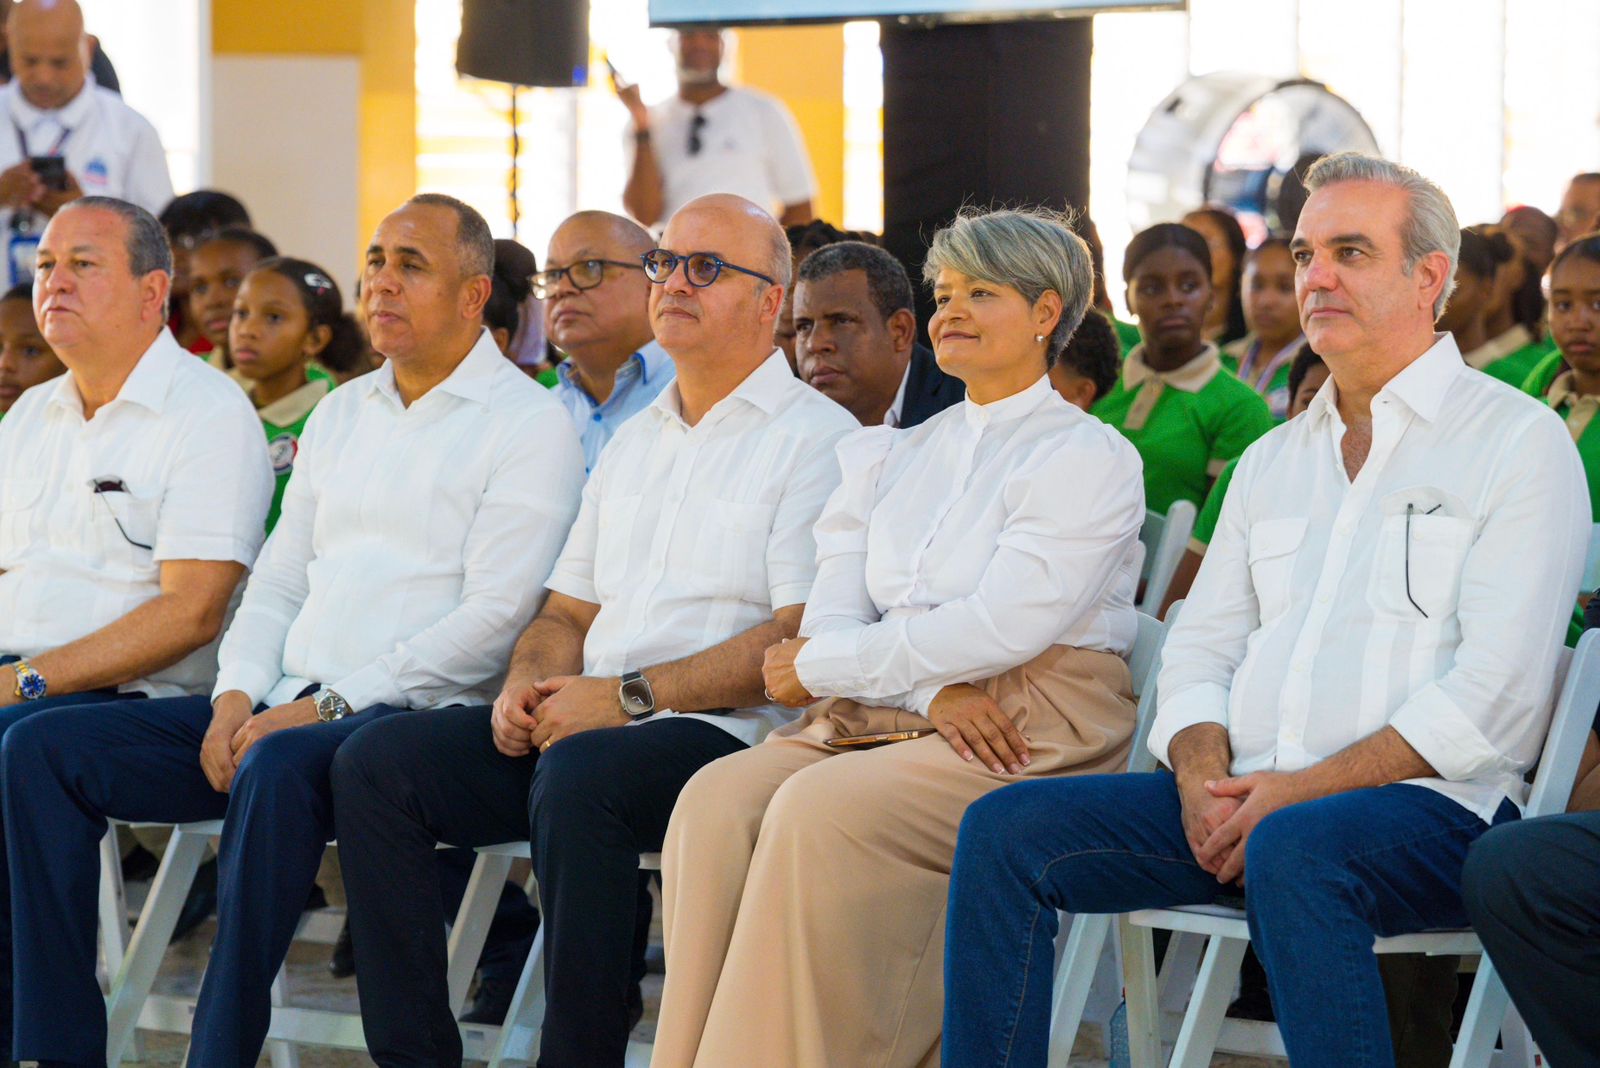 Presidente Abinader inaugurará obras este lunes en Dajabón y Montecristi